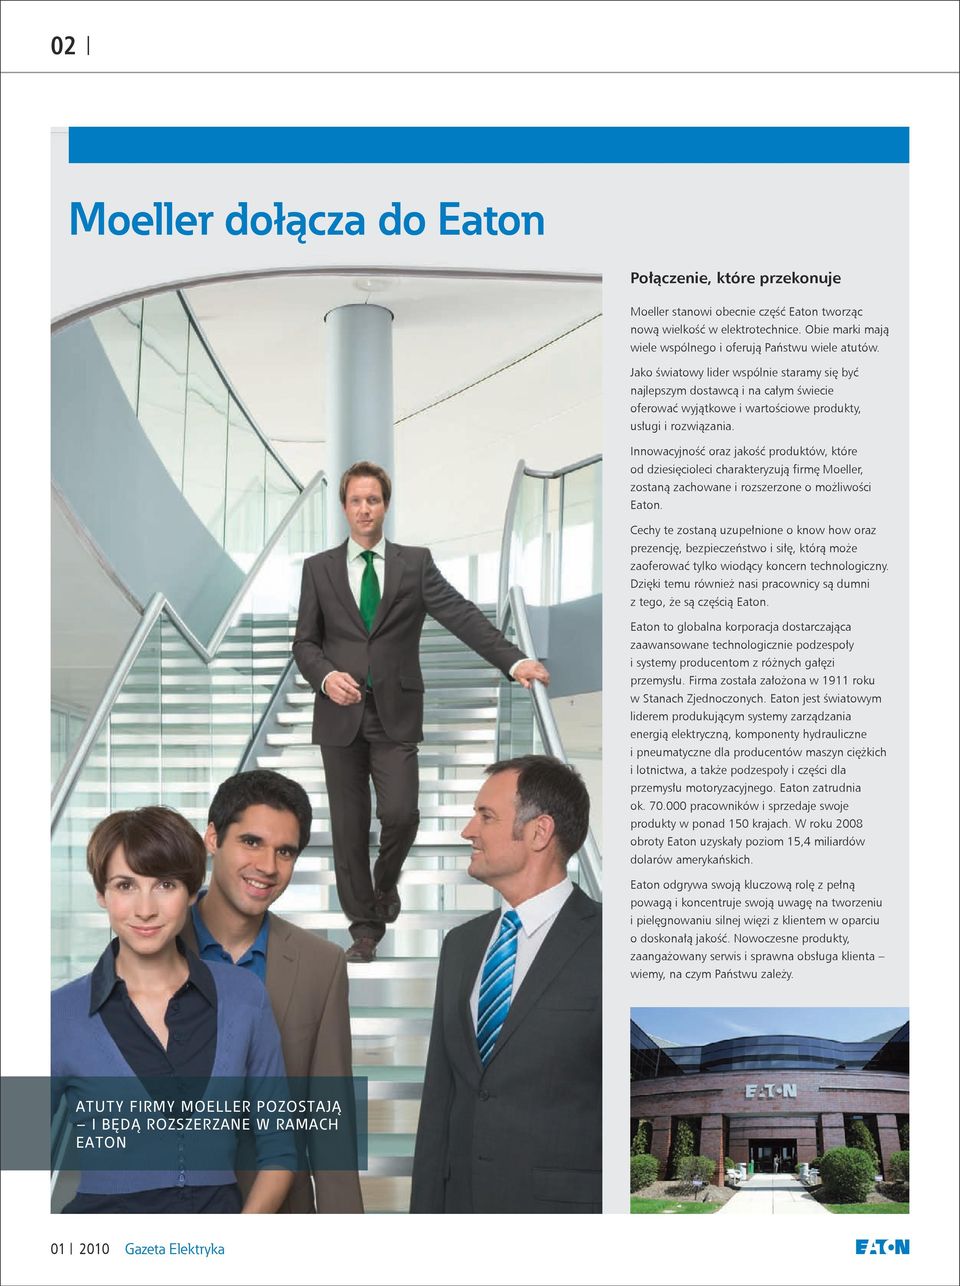 Innowacyjność oraz jakość produktów, które od dziesięcioleci charakteryzują firmę Moeller, zostaną zachowane i rozszerzone o możliwości Eaton.